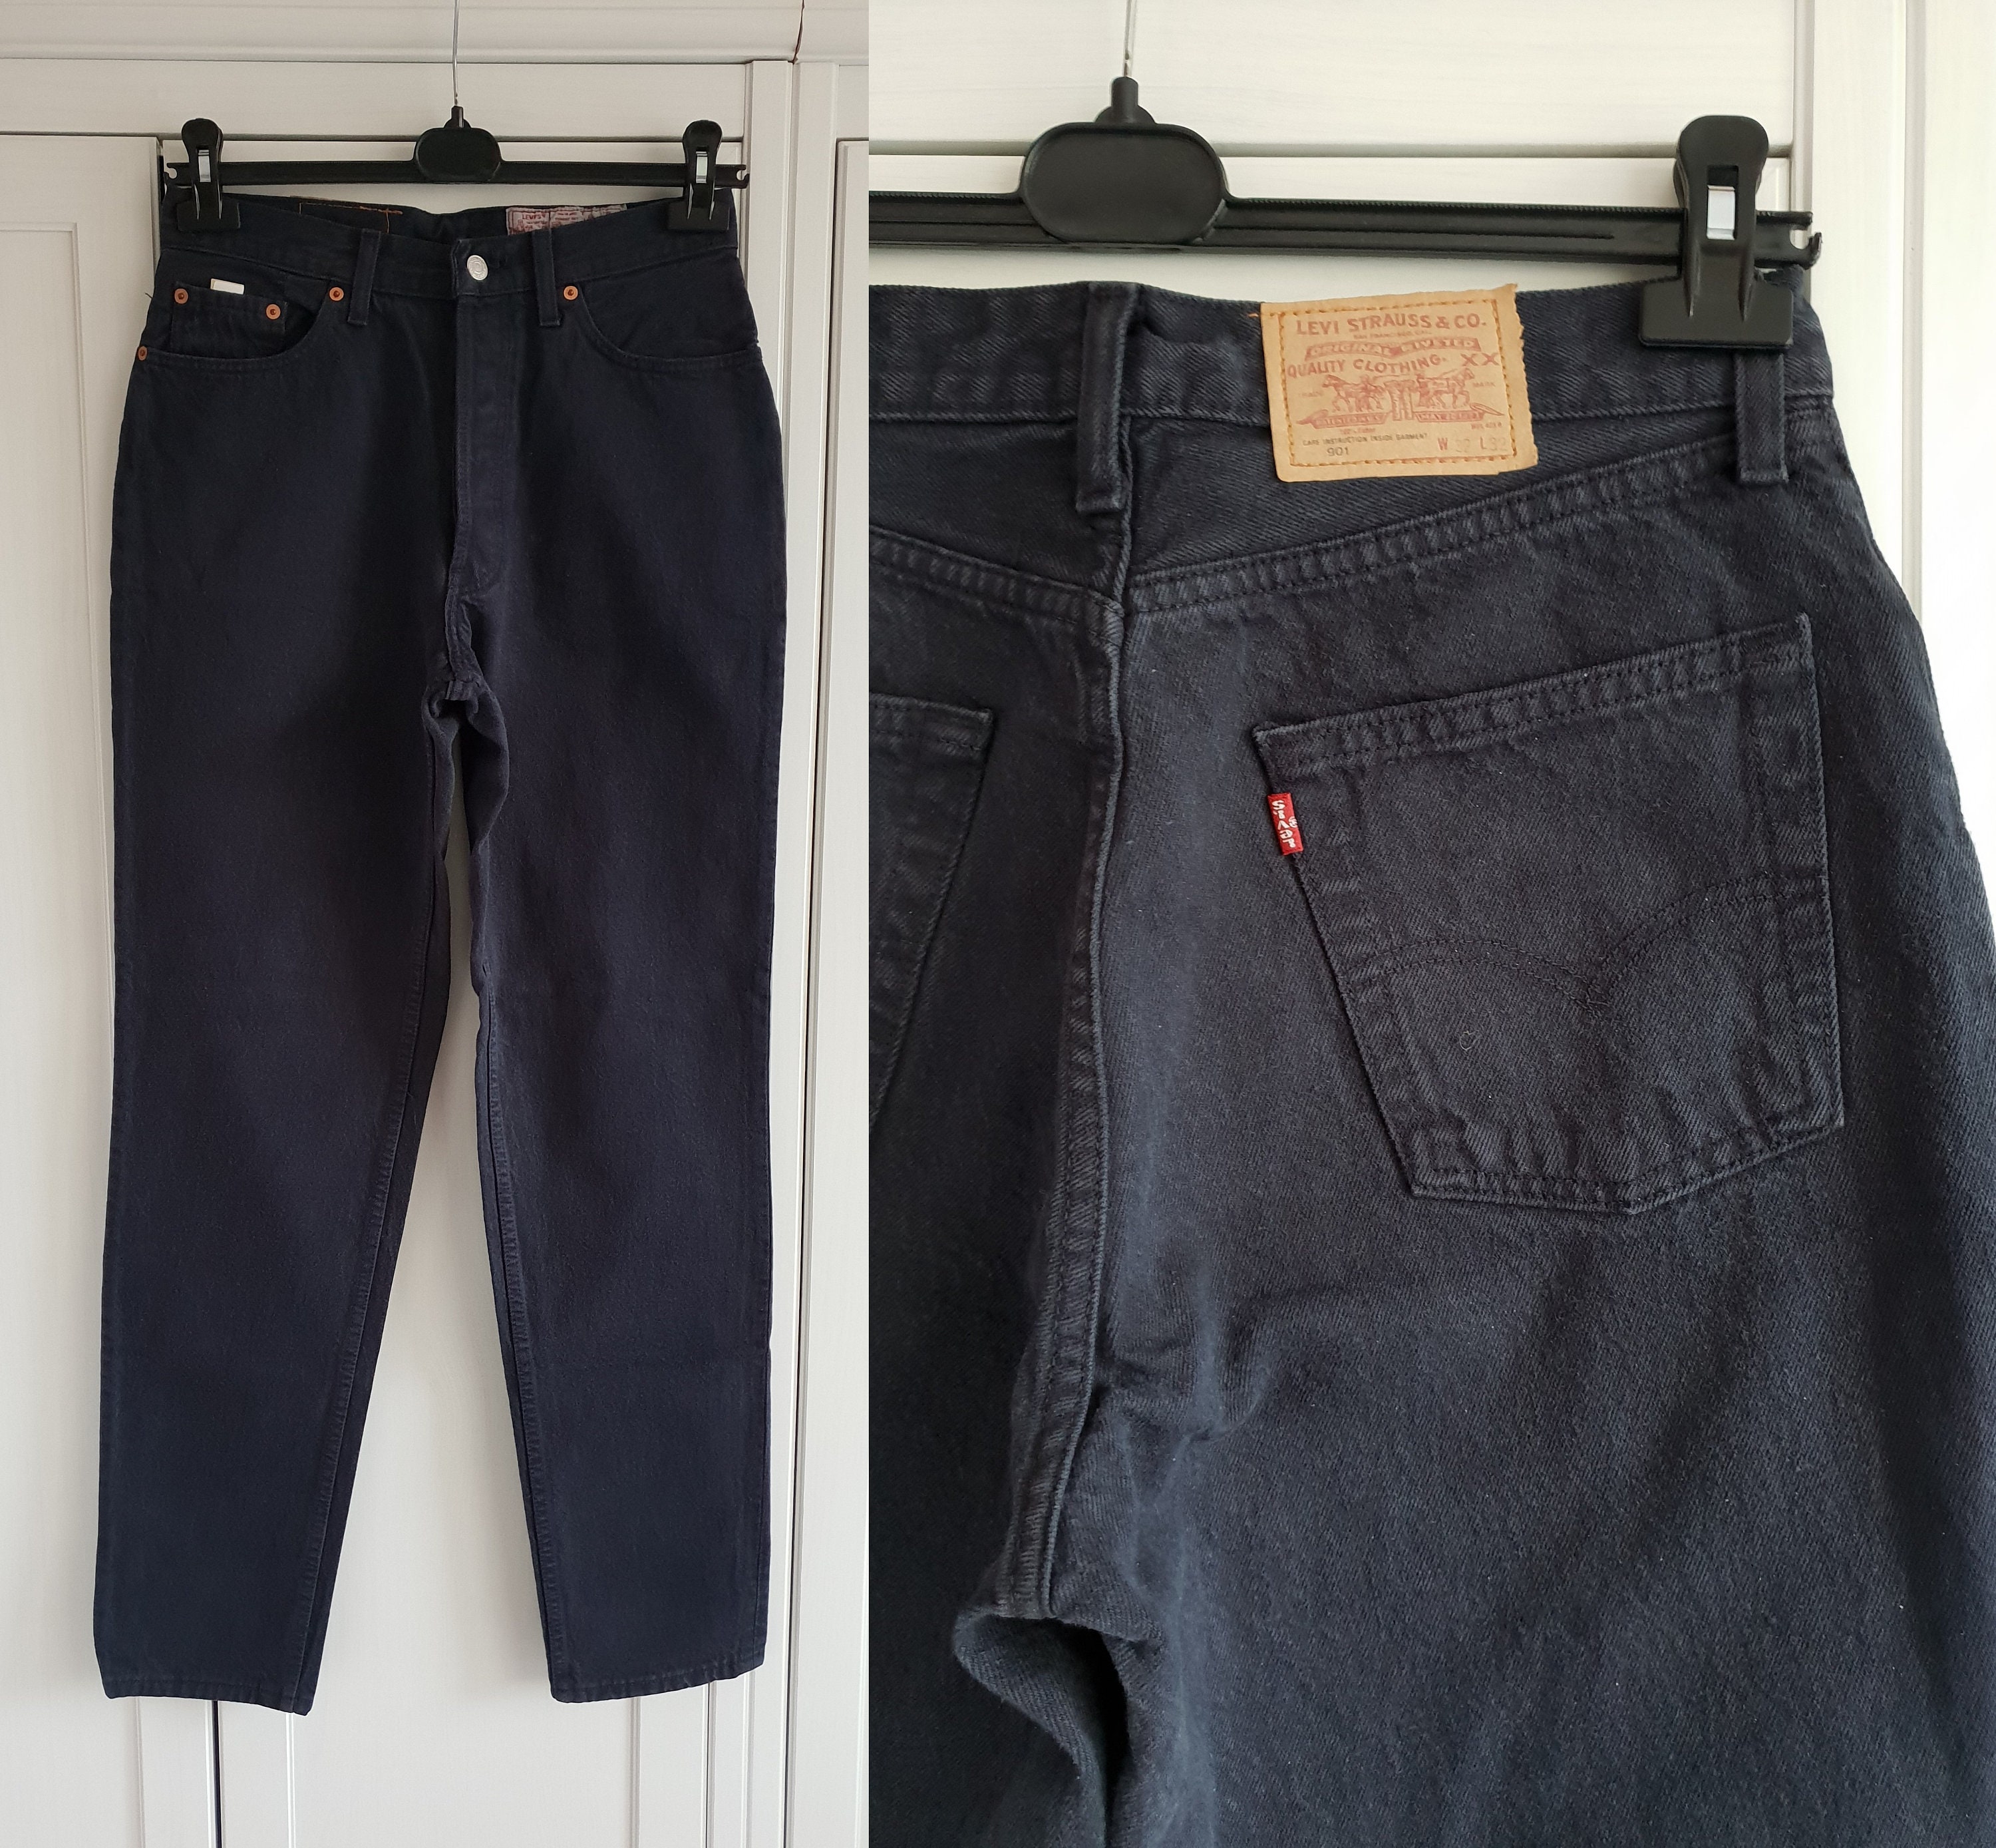 Vintage Levis 901 Jeans Black Denim High Waist Jeans Etsy Sweden